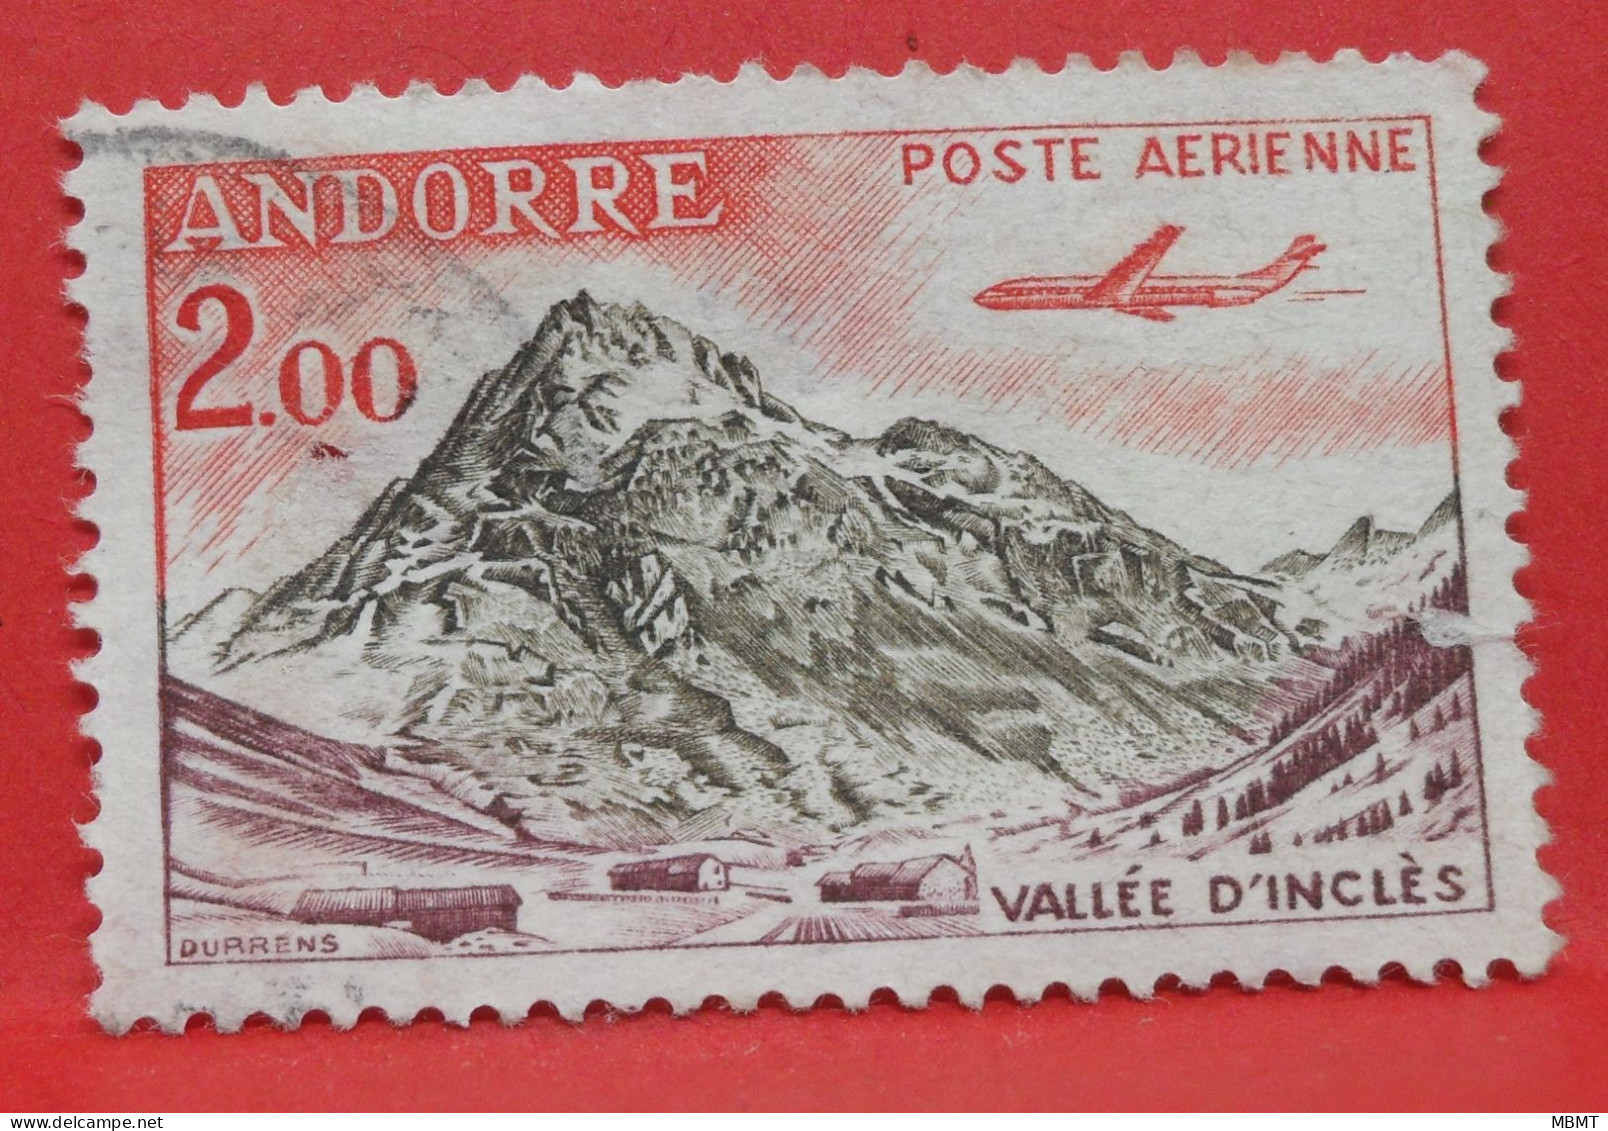 N°175 - 2.00 Francs - Année 1961 - Timbre Oblitéré Andorre Français - - Usati